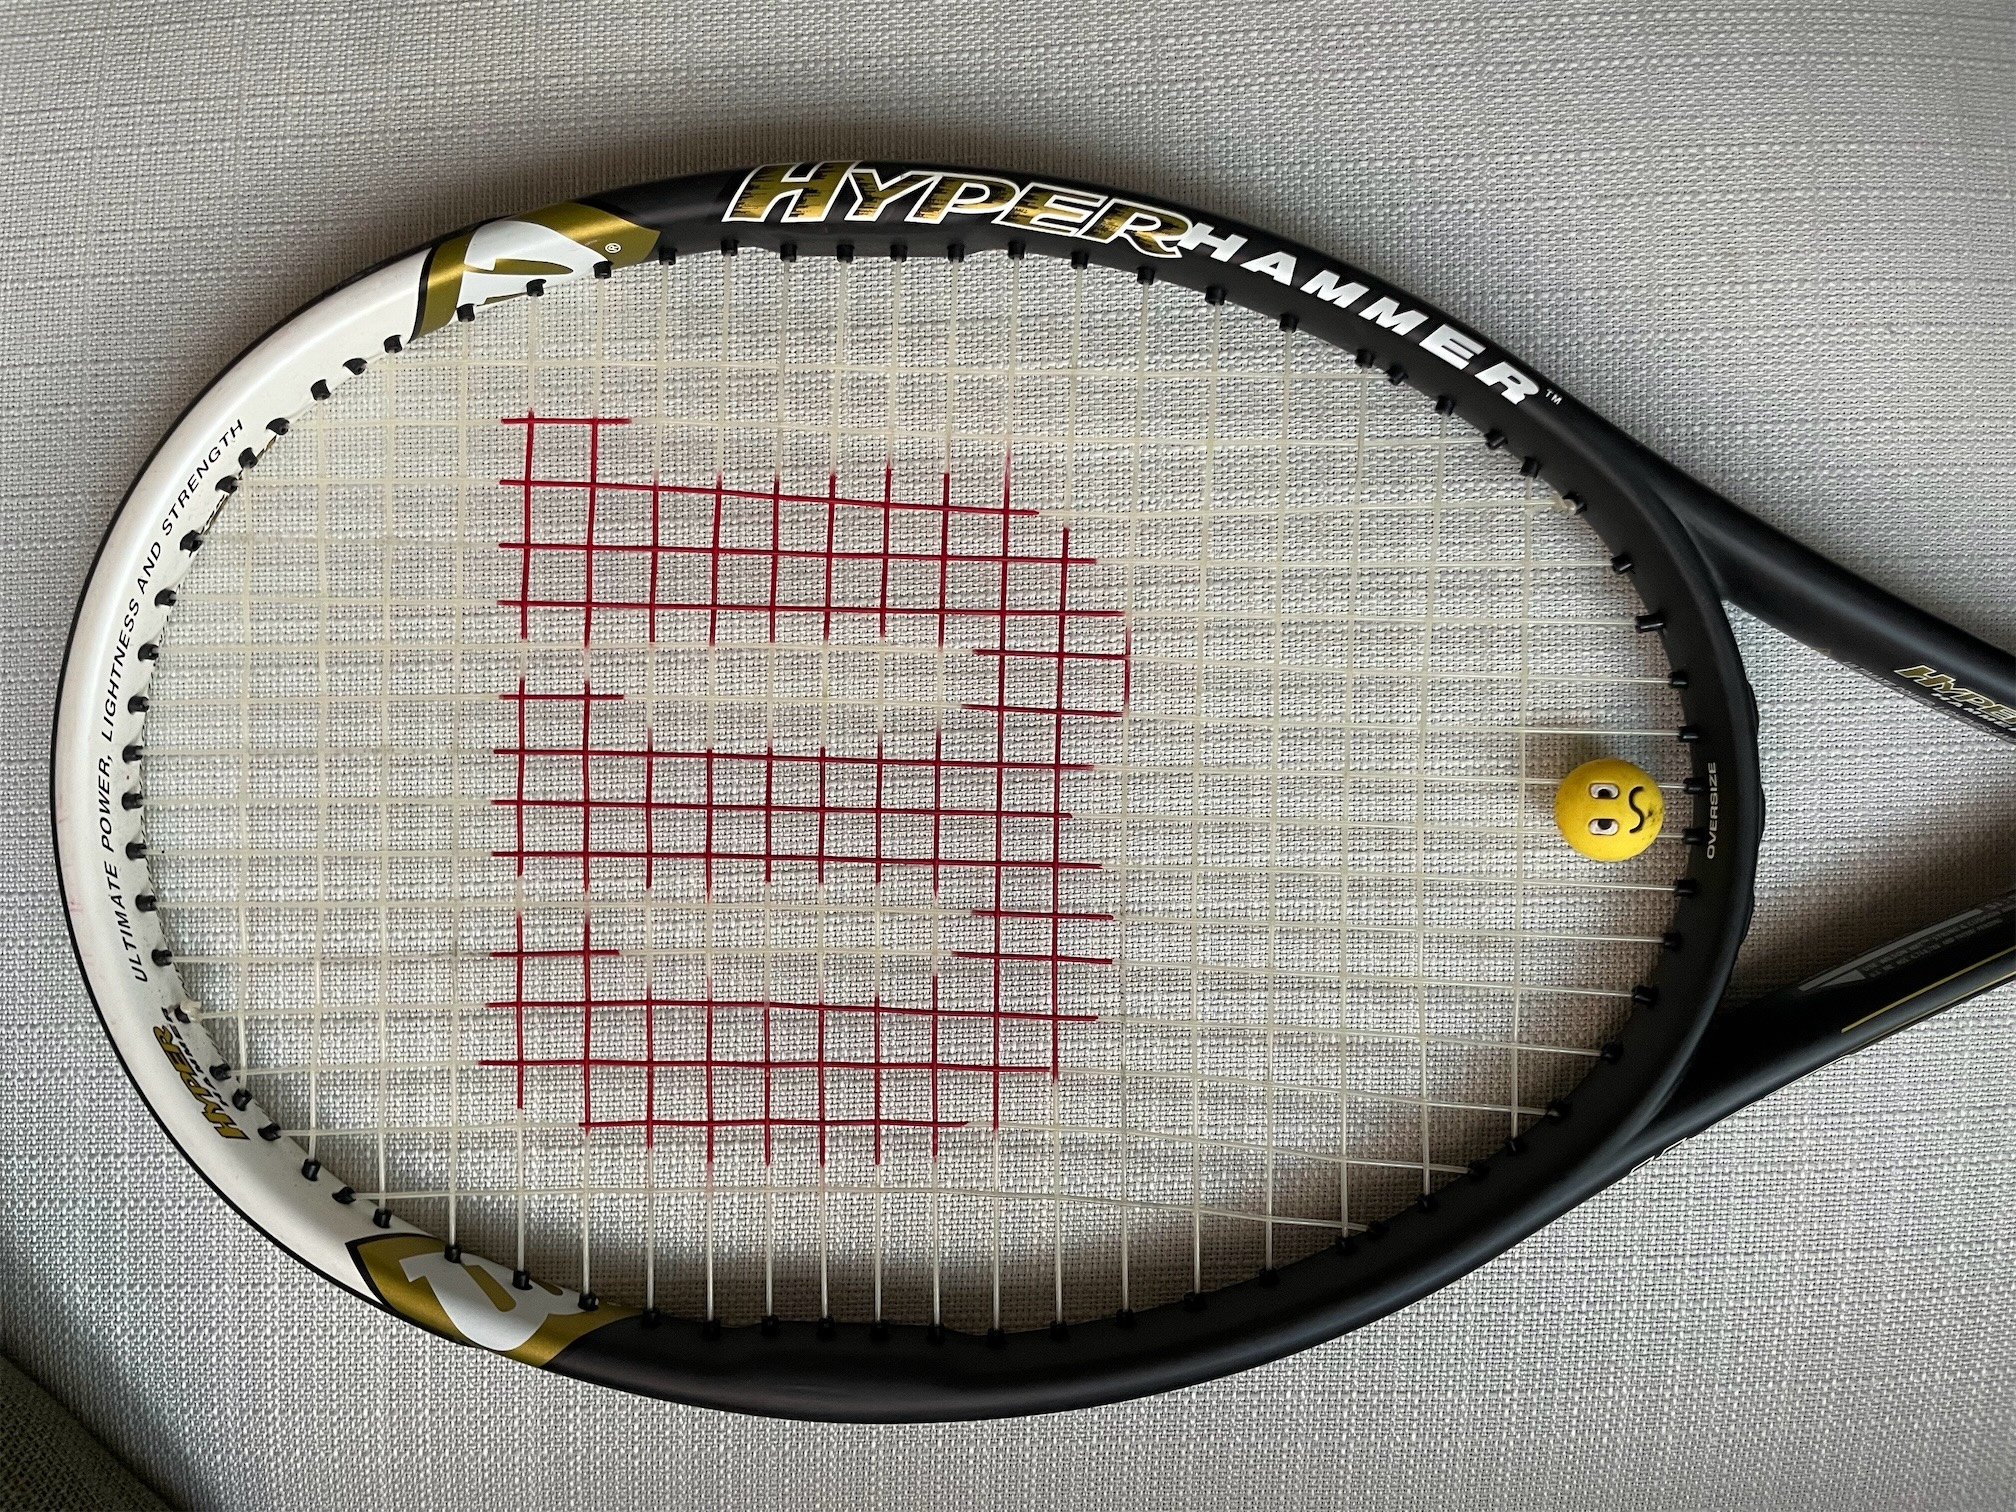 deportes - Raqueta de tenis Wilson, Hyper Hammer 5.3 3